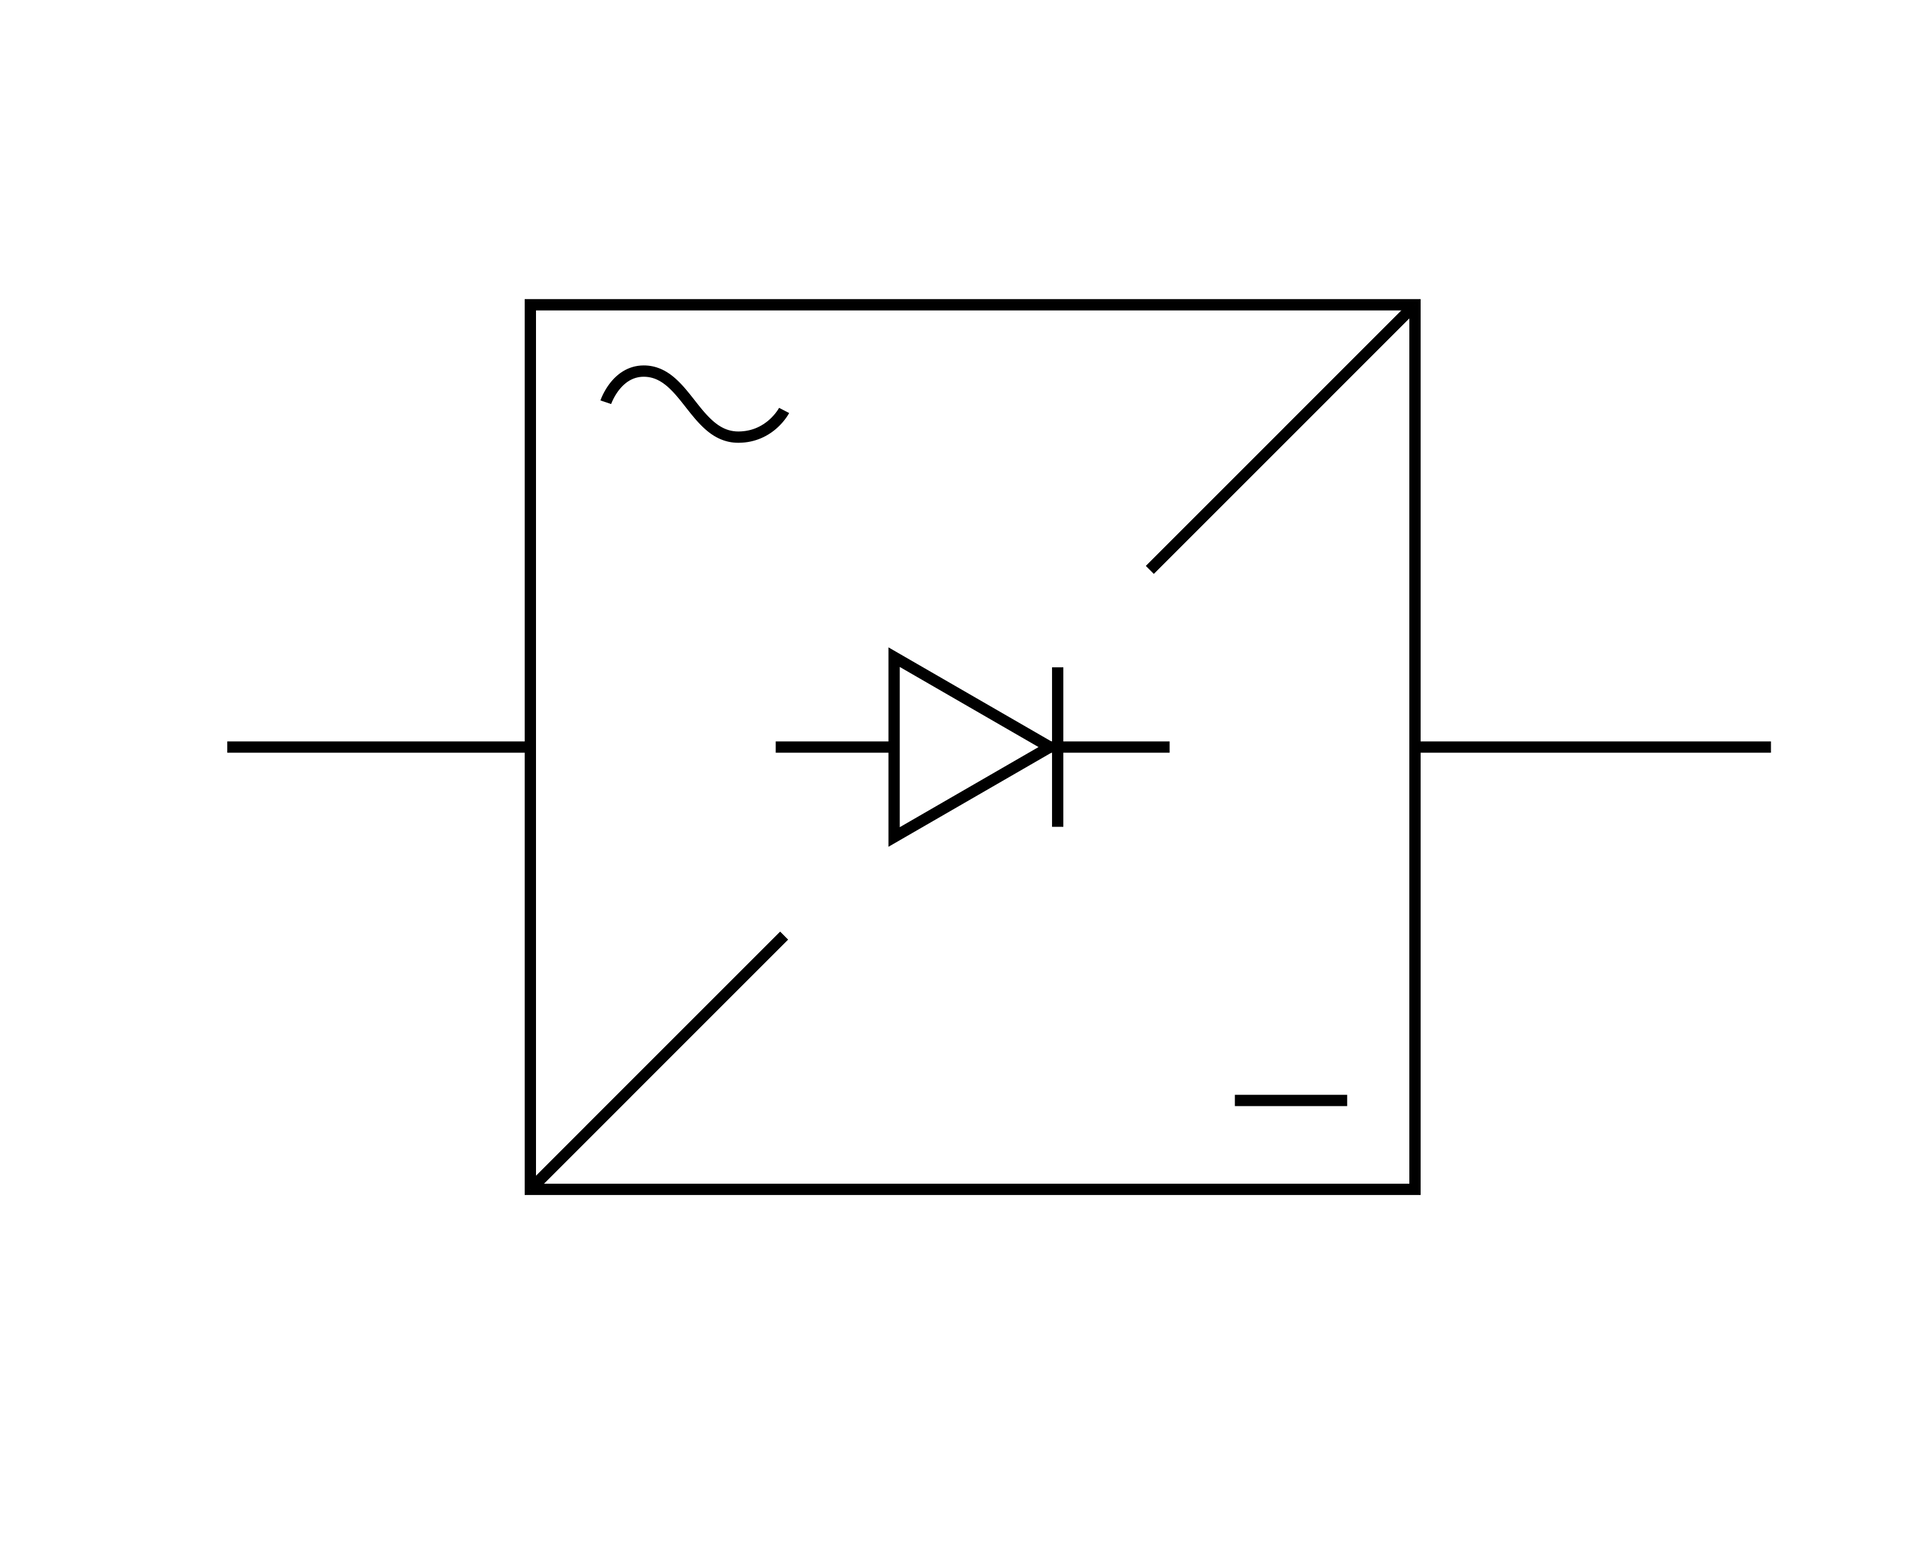 Ilustracja przedstawia kwadrat. W lewym górnym rogu znajduje się znak fali. W prawym dolnym rogu znajduje się symbol minus. Od lewego dolnego rogu ciągnie się do środka ukośna linia. Od prawego górnego rogu ciągnie się do środka ukośna linia. Od ściany prawej oraz lewej ciągną się do zewnątrz poziome linie. W środku znajduje się pozioma linia, na której opisany jest trójkąt i pionowa kreska.